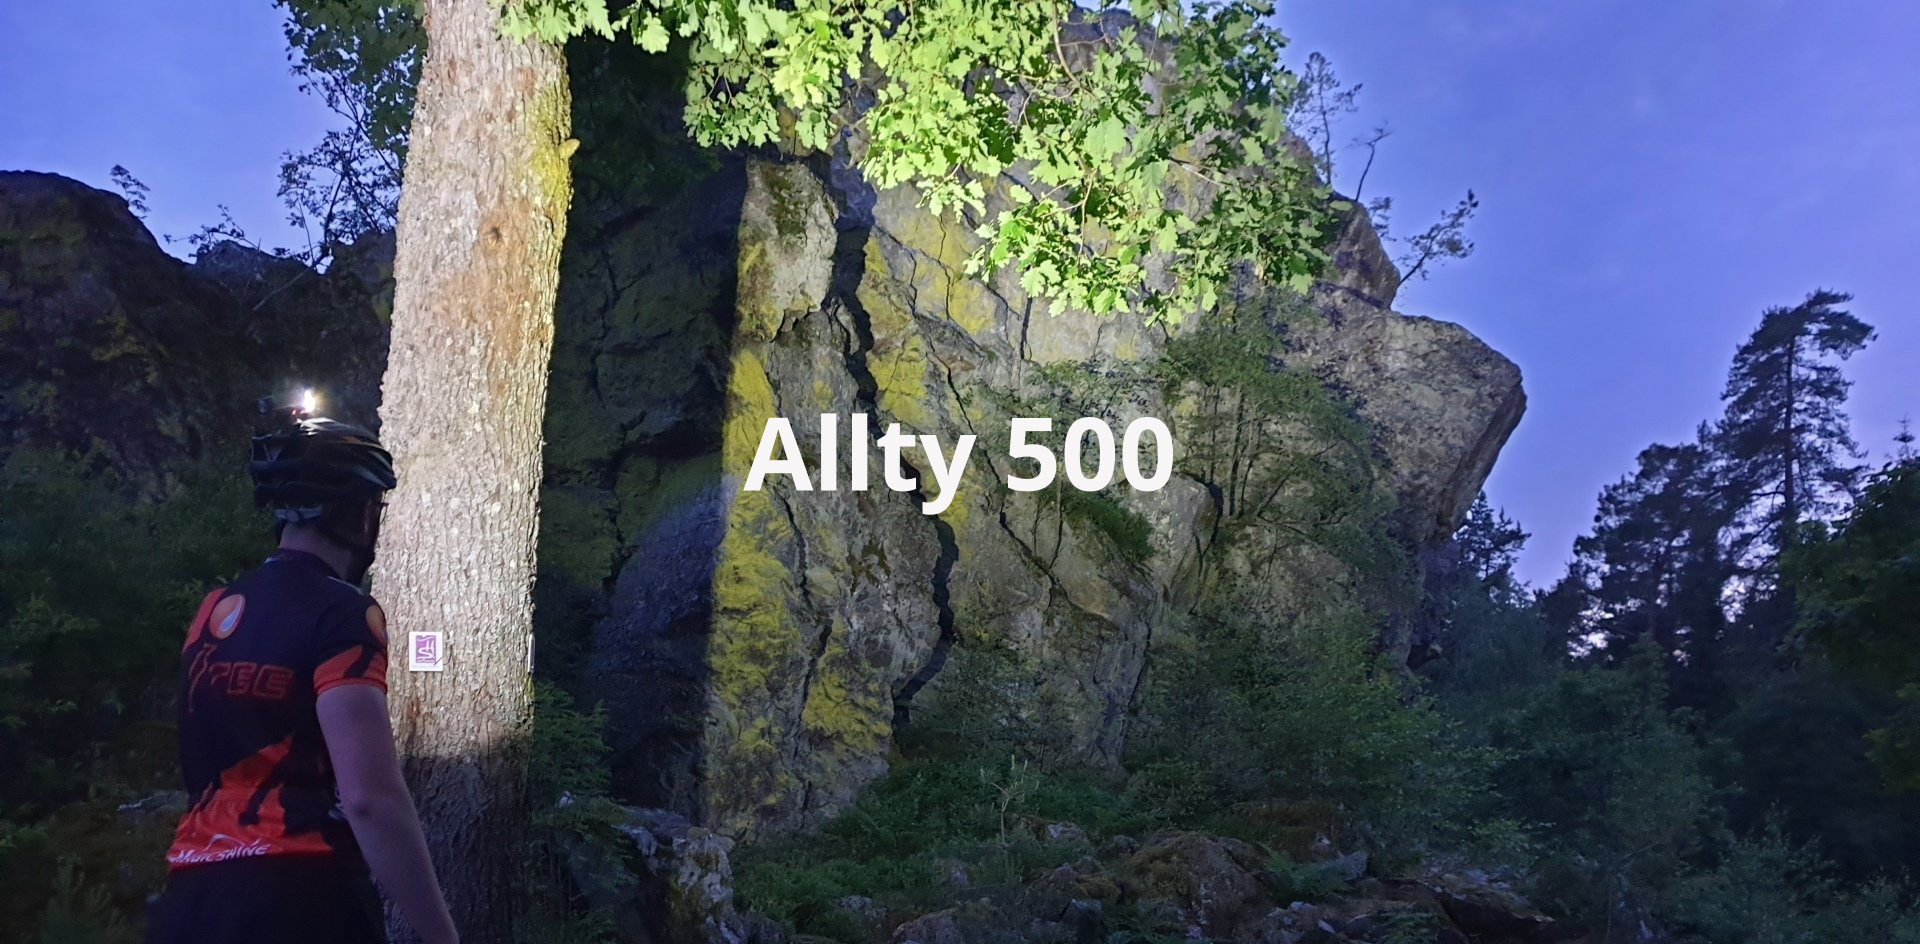 Magicshine Allty 500 Helmlampe mit leuchtstarken LEDs eingesetzt im Wald beim Klettern